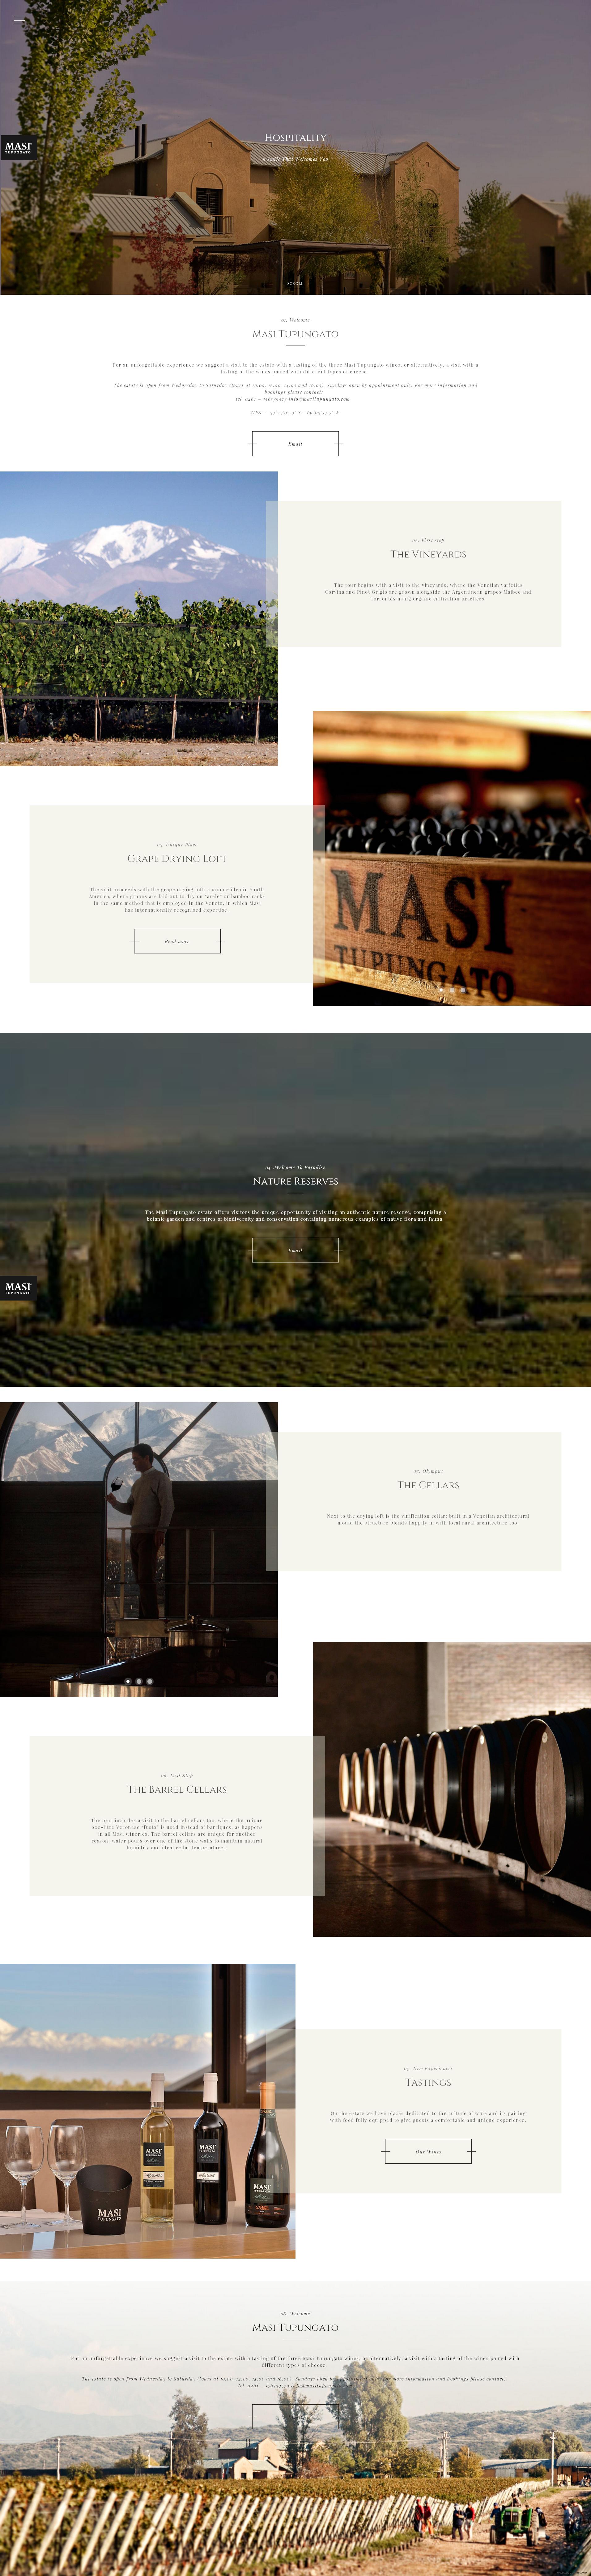 葡萄酒庄园网站设计